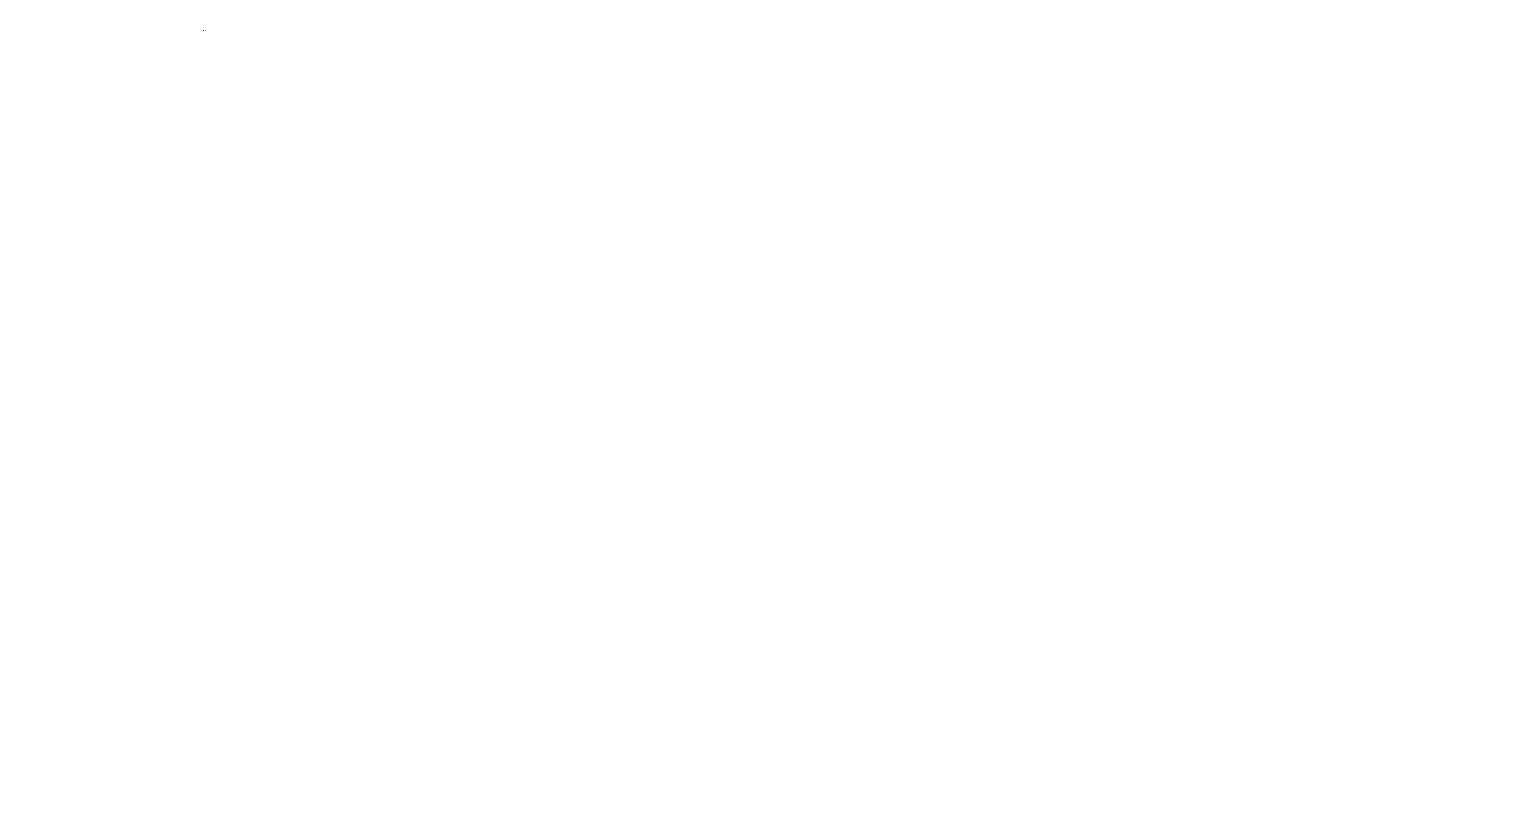 Автомобиль NISSAN ALMERA, г/в 2014, г/н В033КЕ35, VIN Z8NAJL00051341221Собственник: Бычков Н.С.Место нахождение имущества: Вологодская область, г. Вологда, ул. Герцена, д. 83 (с правом пользования) Основание реализации имущества: Постановление судебного пристава-исполнителя о передаче арестованного имущества на торги Собственник имущества: Быкович Н.С. Порядок ознакомления с имуществом: Ознакомление с дополнительной информацией о предмете аукциона и иным вопросам осуществляется  по рабочим дням с 10:00 до 12:00 и с 15:00 до 17.00 с момента публикации информационного сообщения до даты окончания подачи заявок Обременения реализуемого имущества: С обременением имущества можно ознакомиться в файле Информационное сообщение Условия договора, заключаемого по результатам торгов: Продавец заключает договор купли-продажи имущества с лицом, выигравшим публичные торги, путем подписания договора при помощи ЭЦП в электронной форме и на бумажном носителе по адресу нахождения продавца: г. Вологда, ул. Пушкинская, д.25, каб.506 Порядок и сроки уплаты покупной цены по итогам проведения торгов: Лицо, выигравшее торги, должно внести в течение пяти дней после их окончания сумму, за которую данным лицом куплено арестованное имущество (покупную цену), за вычетом ранее внесенного задатка на счет продавца.    Реквизиты для внесения оставшейся суммы: Получатель: УФК по Вологодской области (ТУ Росимущества в Вологодской области л/с 05301A27050) ИНН 3525237735, КПП 352501001 р/с 03212643000000013000 ОТДЕЛЕНИЕ ВОЛОГДА//УФК по Вологодской области г. Вологда БИК 011909101 КБК 16700000000000000000 Вологодская область, г. Вологда, ул. Герцена, д. 83 Информация по предыдущим торгам: Отсутствуют Форма собственности: Иная собственность Государственный регистрационный знак: В033КЕ35 Год выпуска: 2014 VIN номер: Z8NAJL00051341221 Вид транспорта: Легковой Марка: NISSAN Модель: ALMERA   